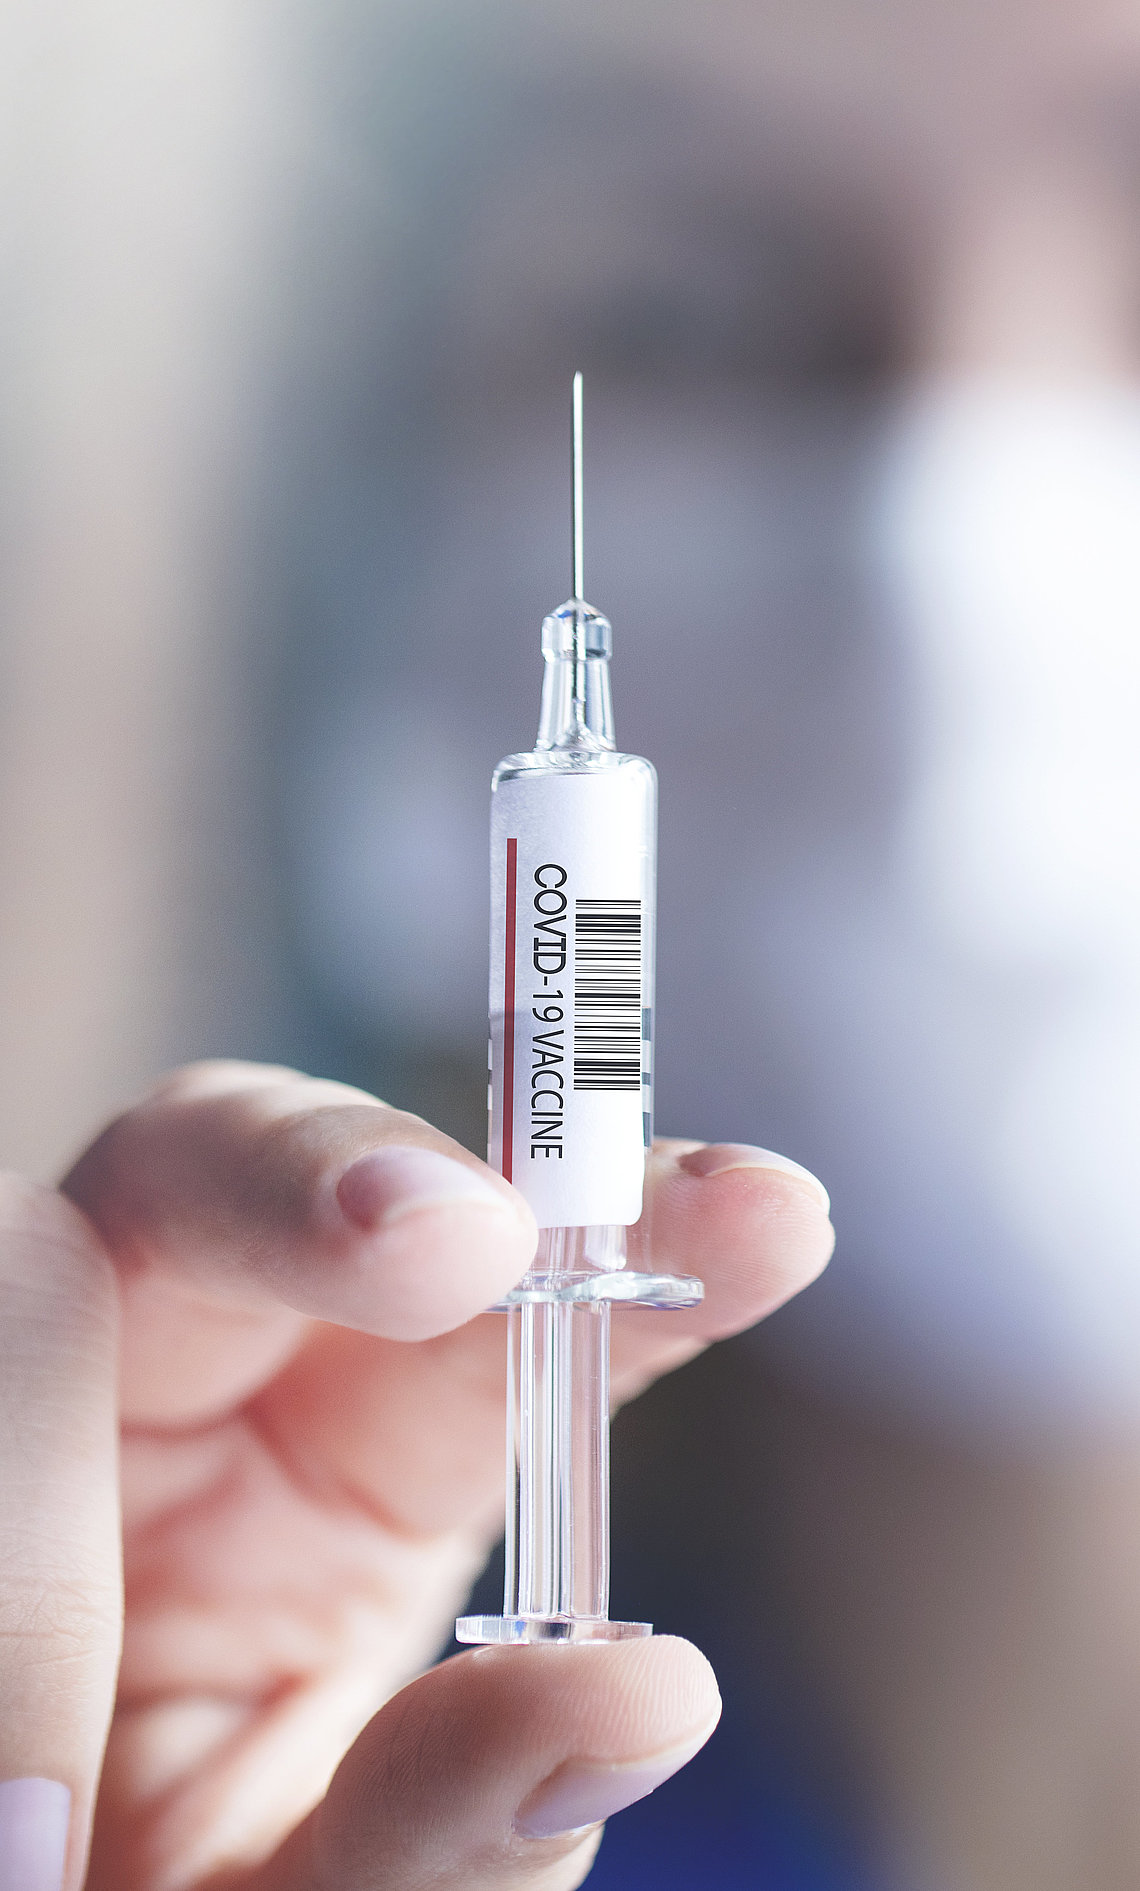 Ärztin hält eine Spritze mit dem Impfstoff gegen COVID-19 in der Hand